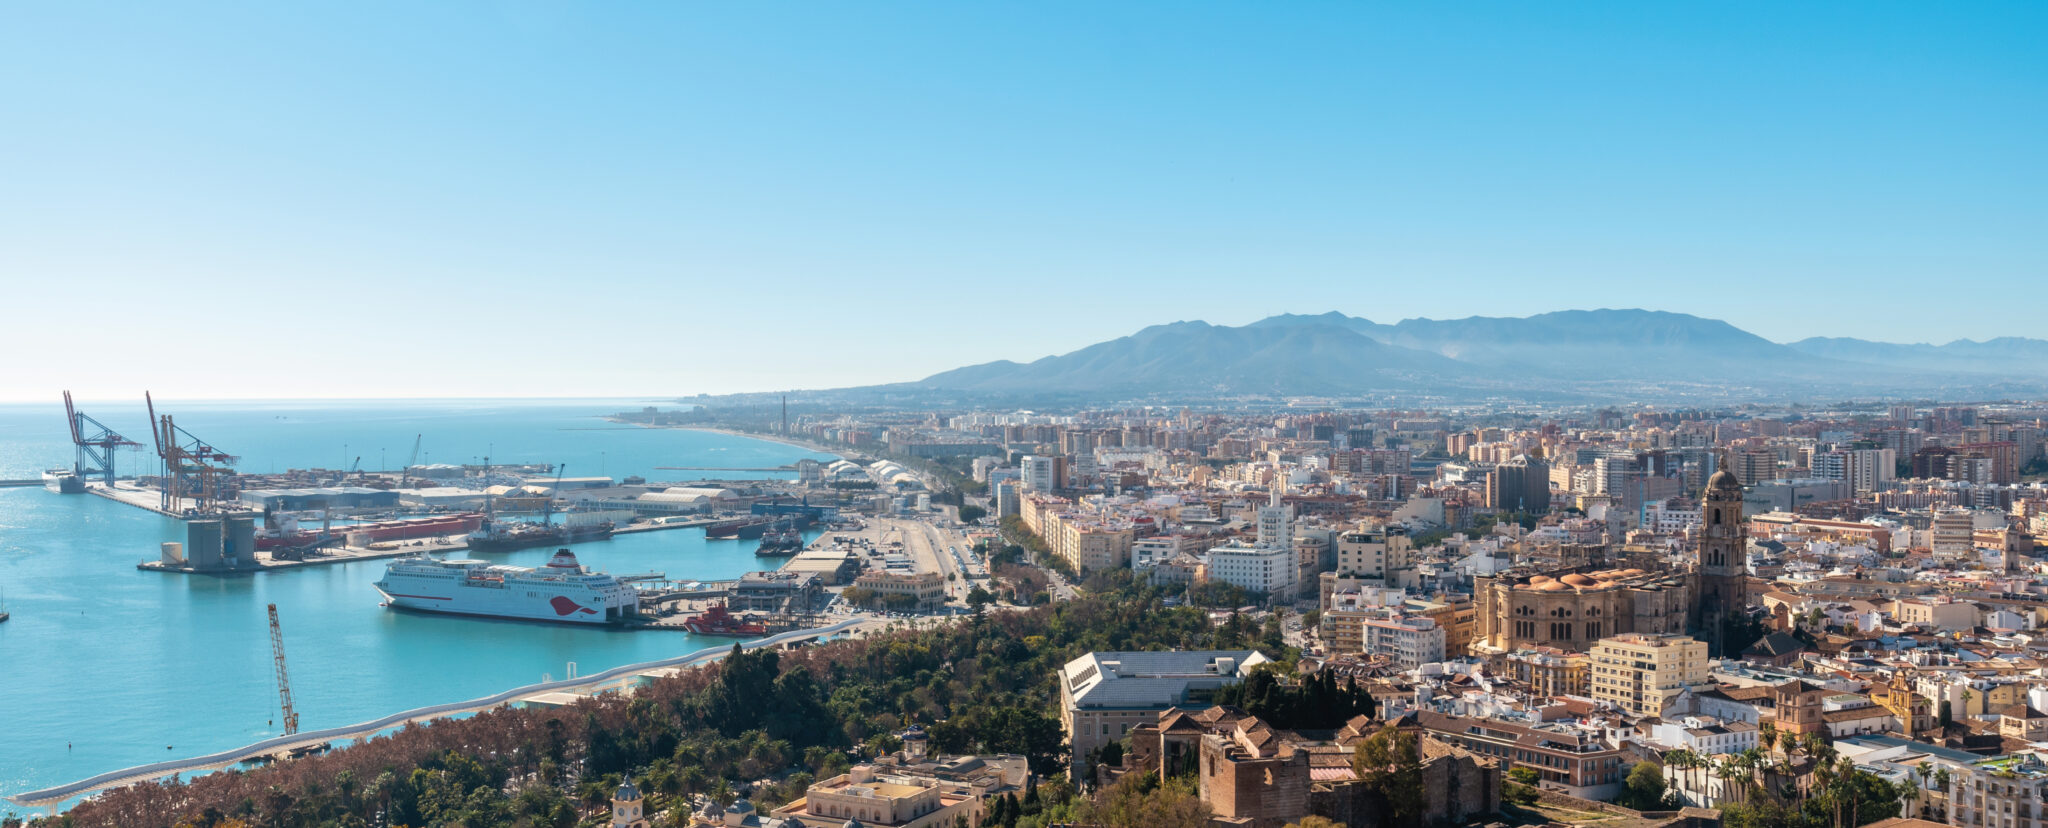 Málaga es uno de los destinos de verano más atractivos del Mediterráneo. Sigue leyendo y descubre qué hacer en tu viaje a Málaga